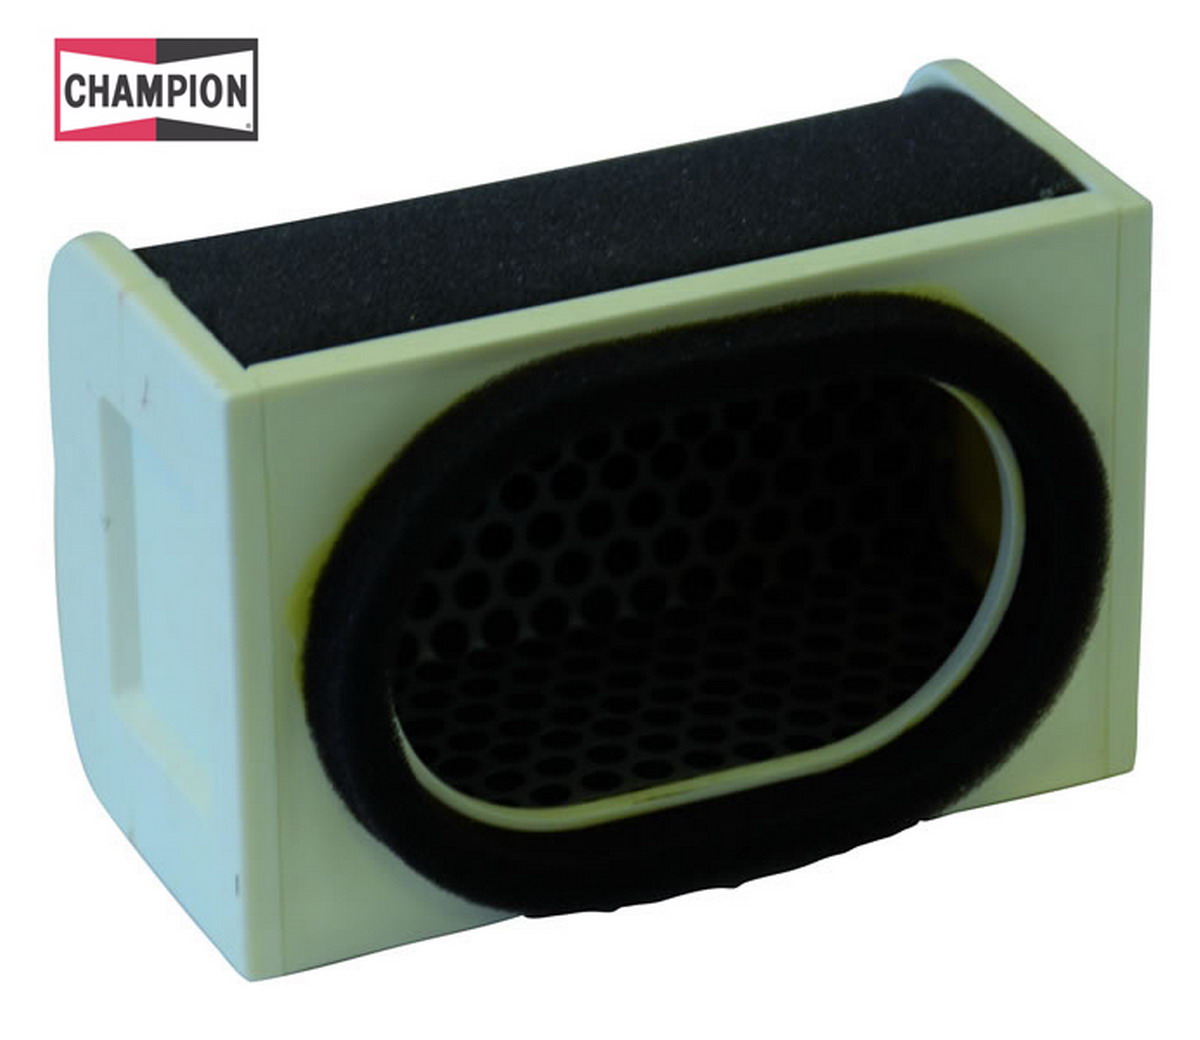 Obrázek produktu Vzduchový filtr CHAMPION J320/301 100604325